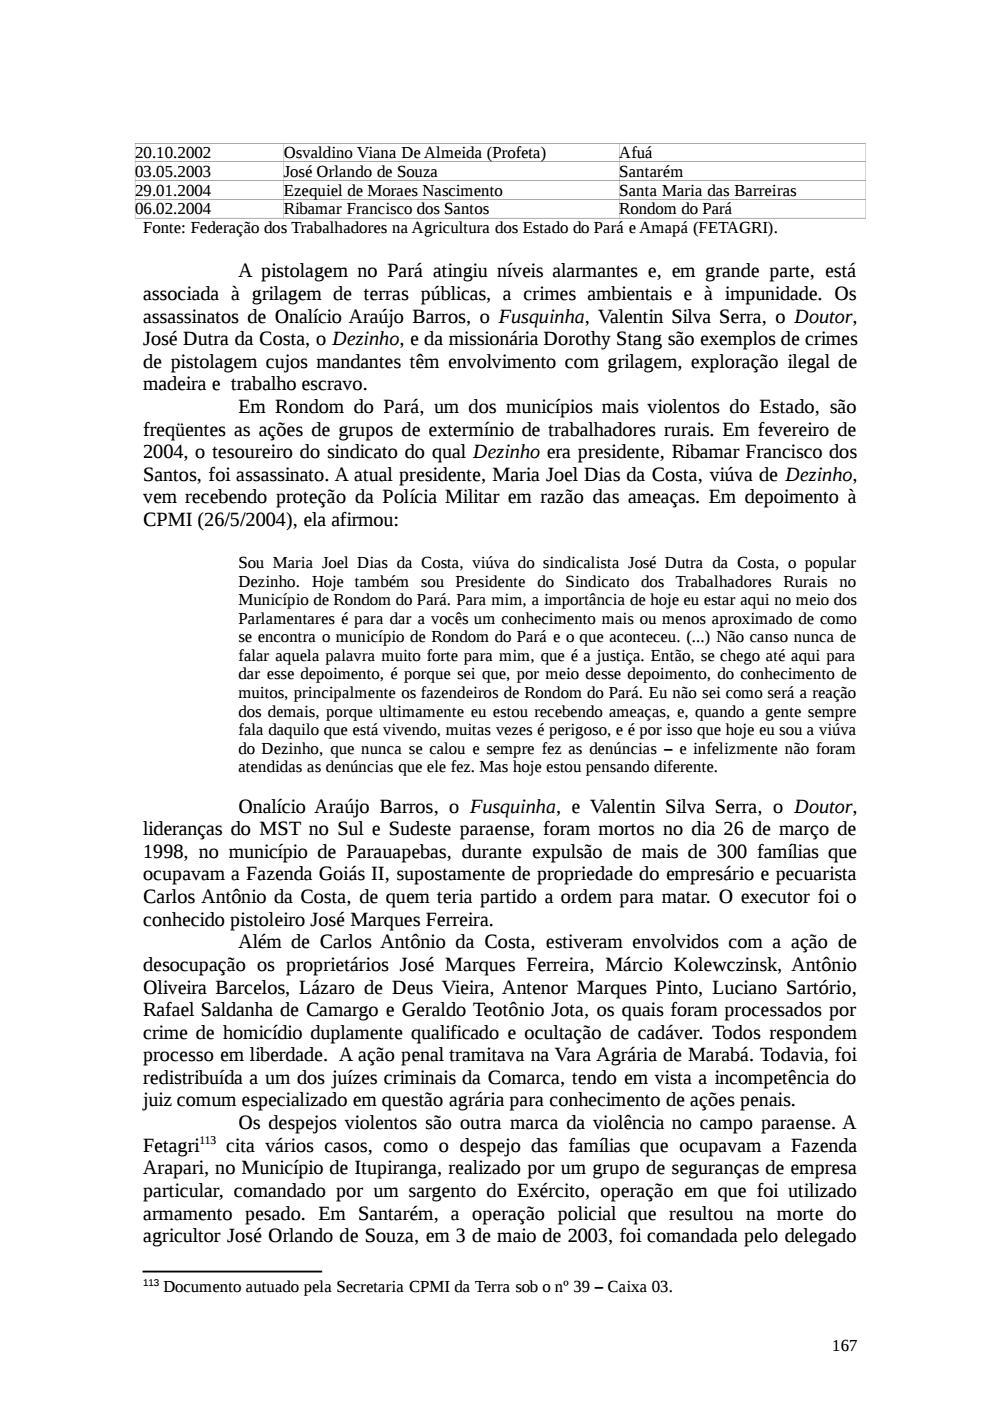 Page 167 from Relatório final da comissão